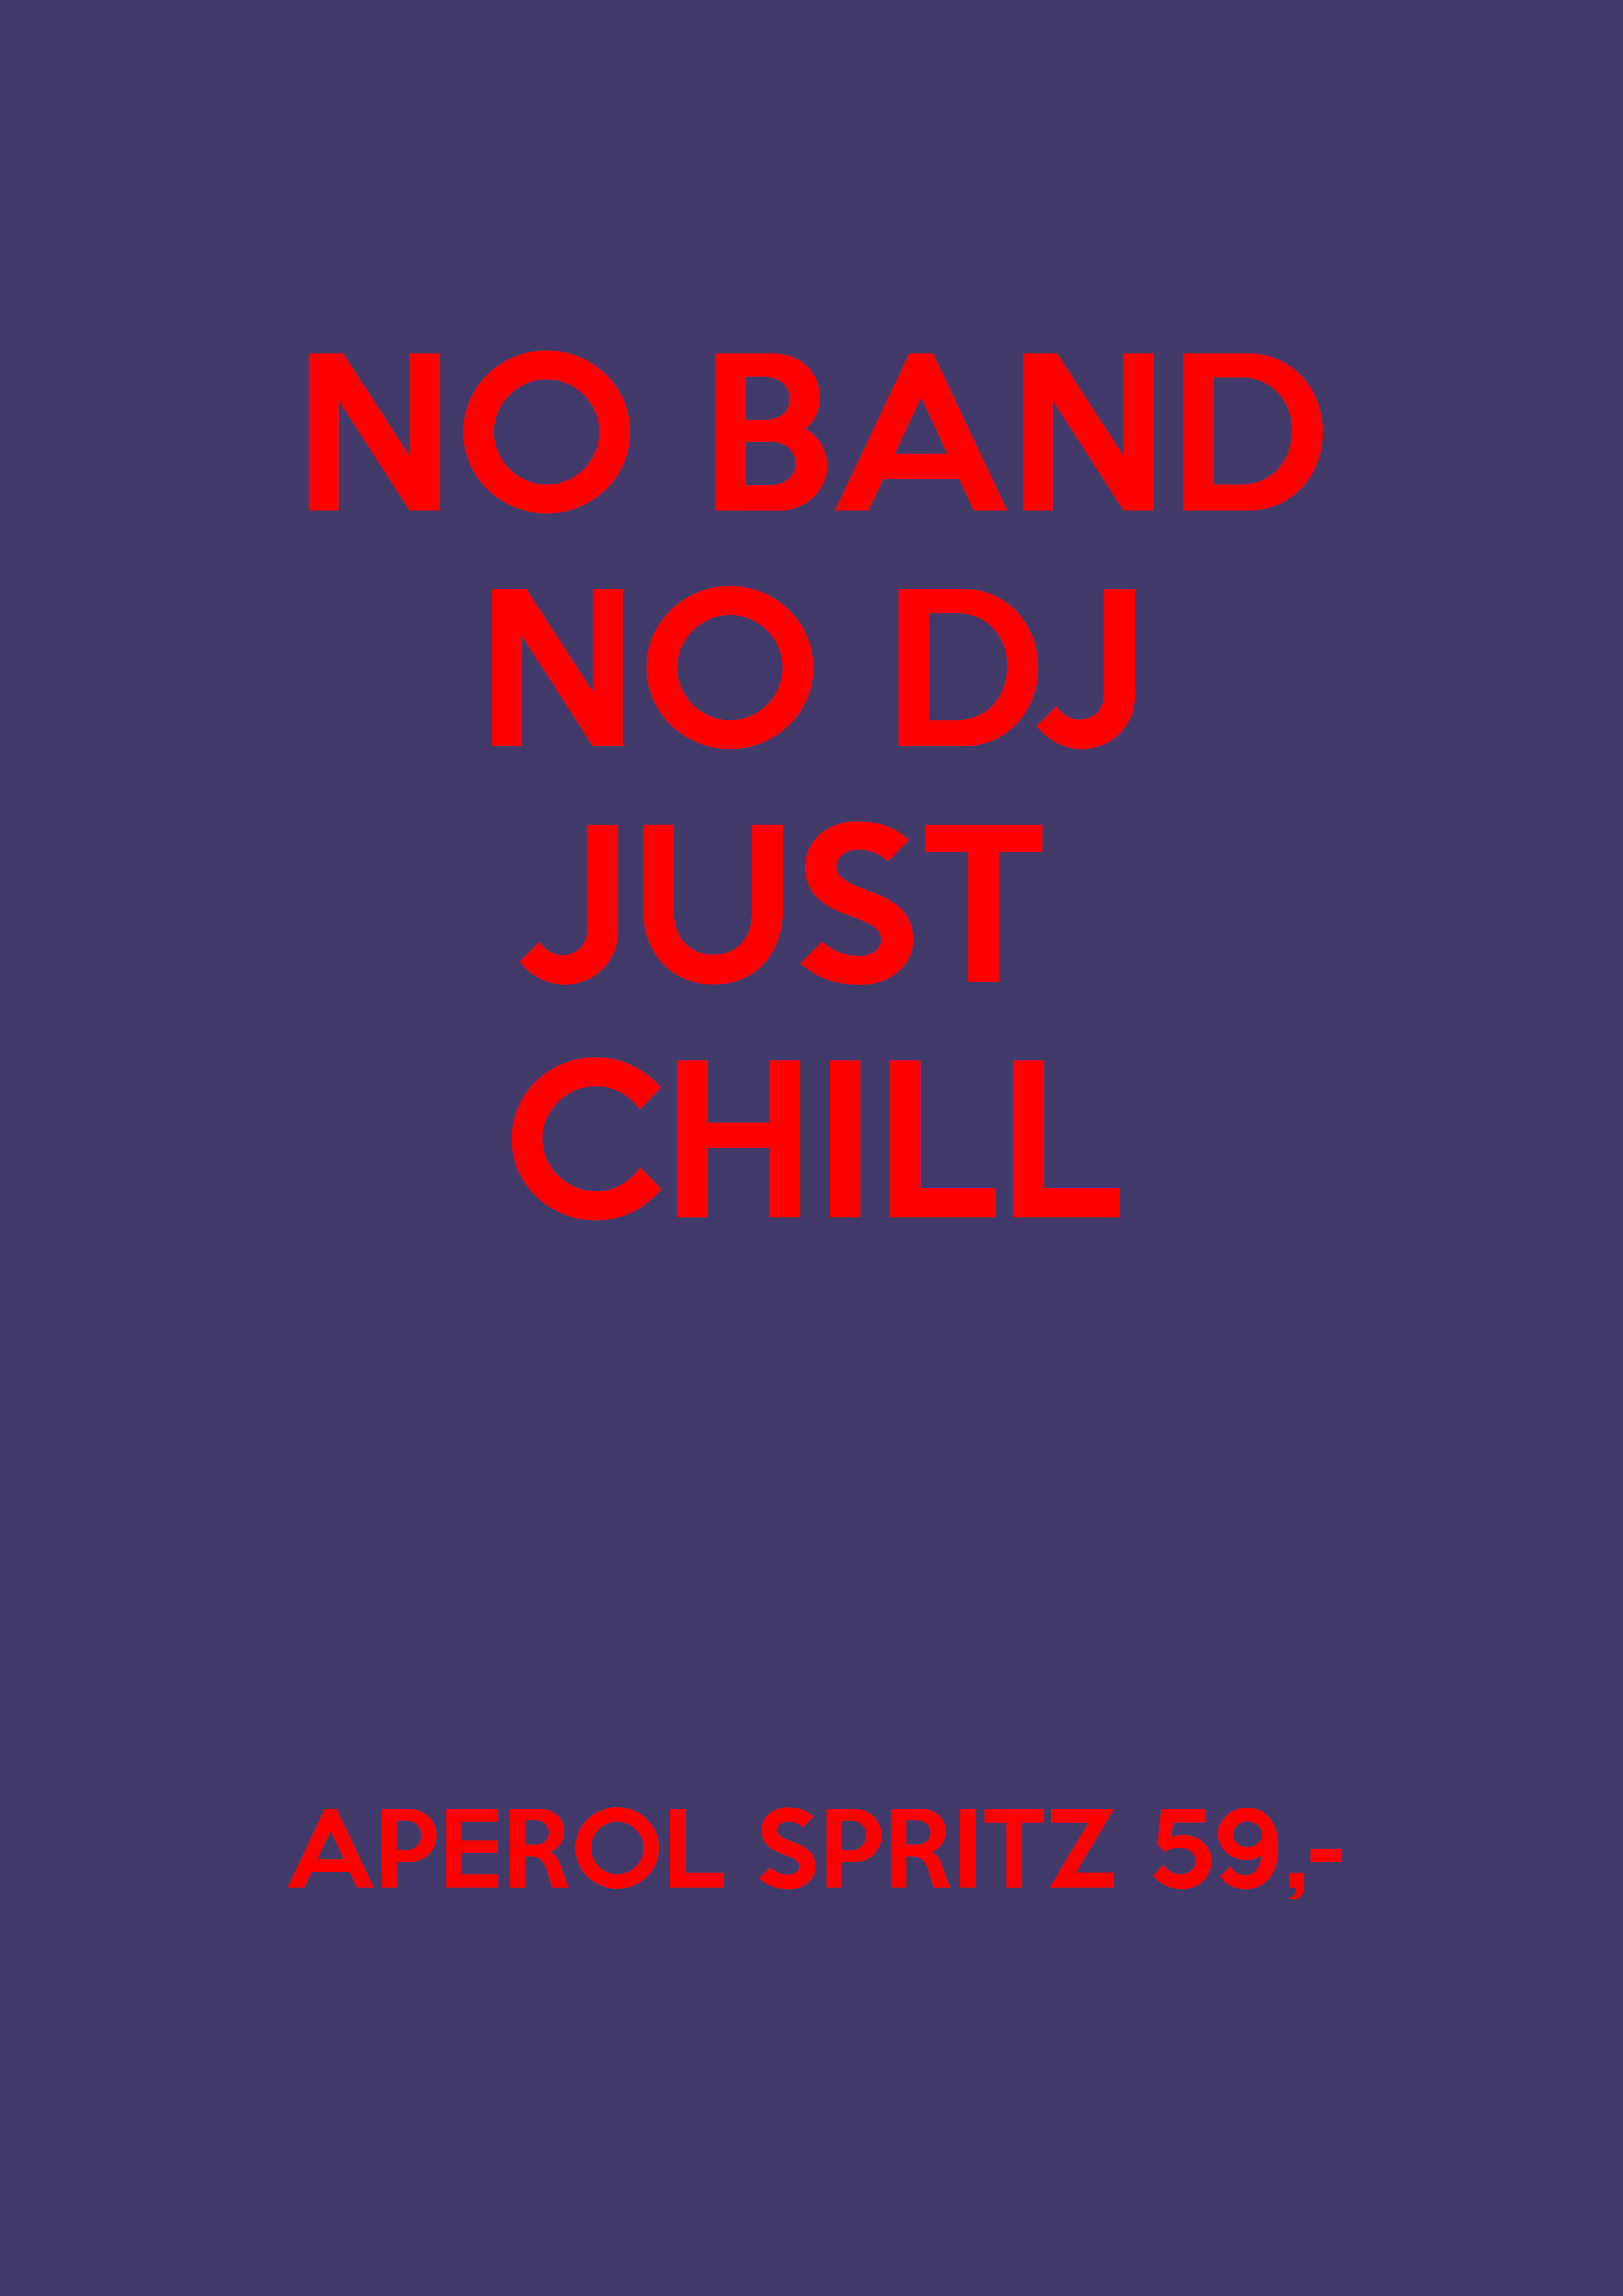 No band, no dj, just chill